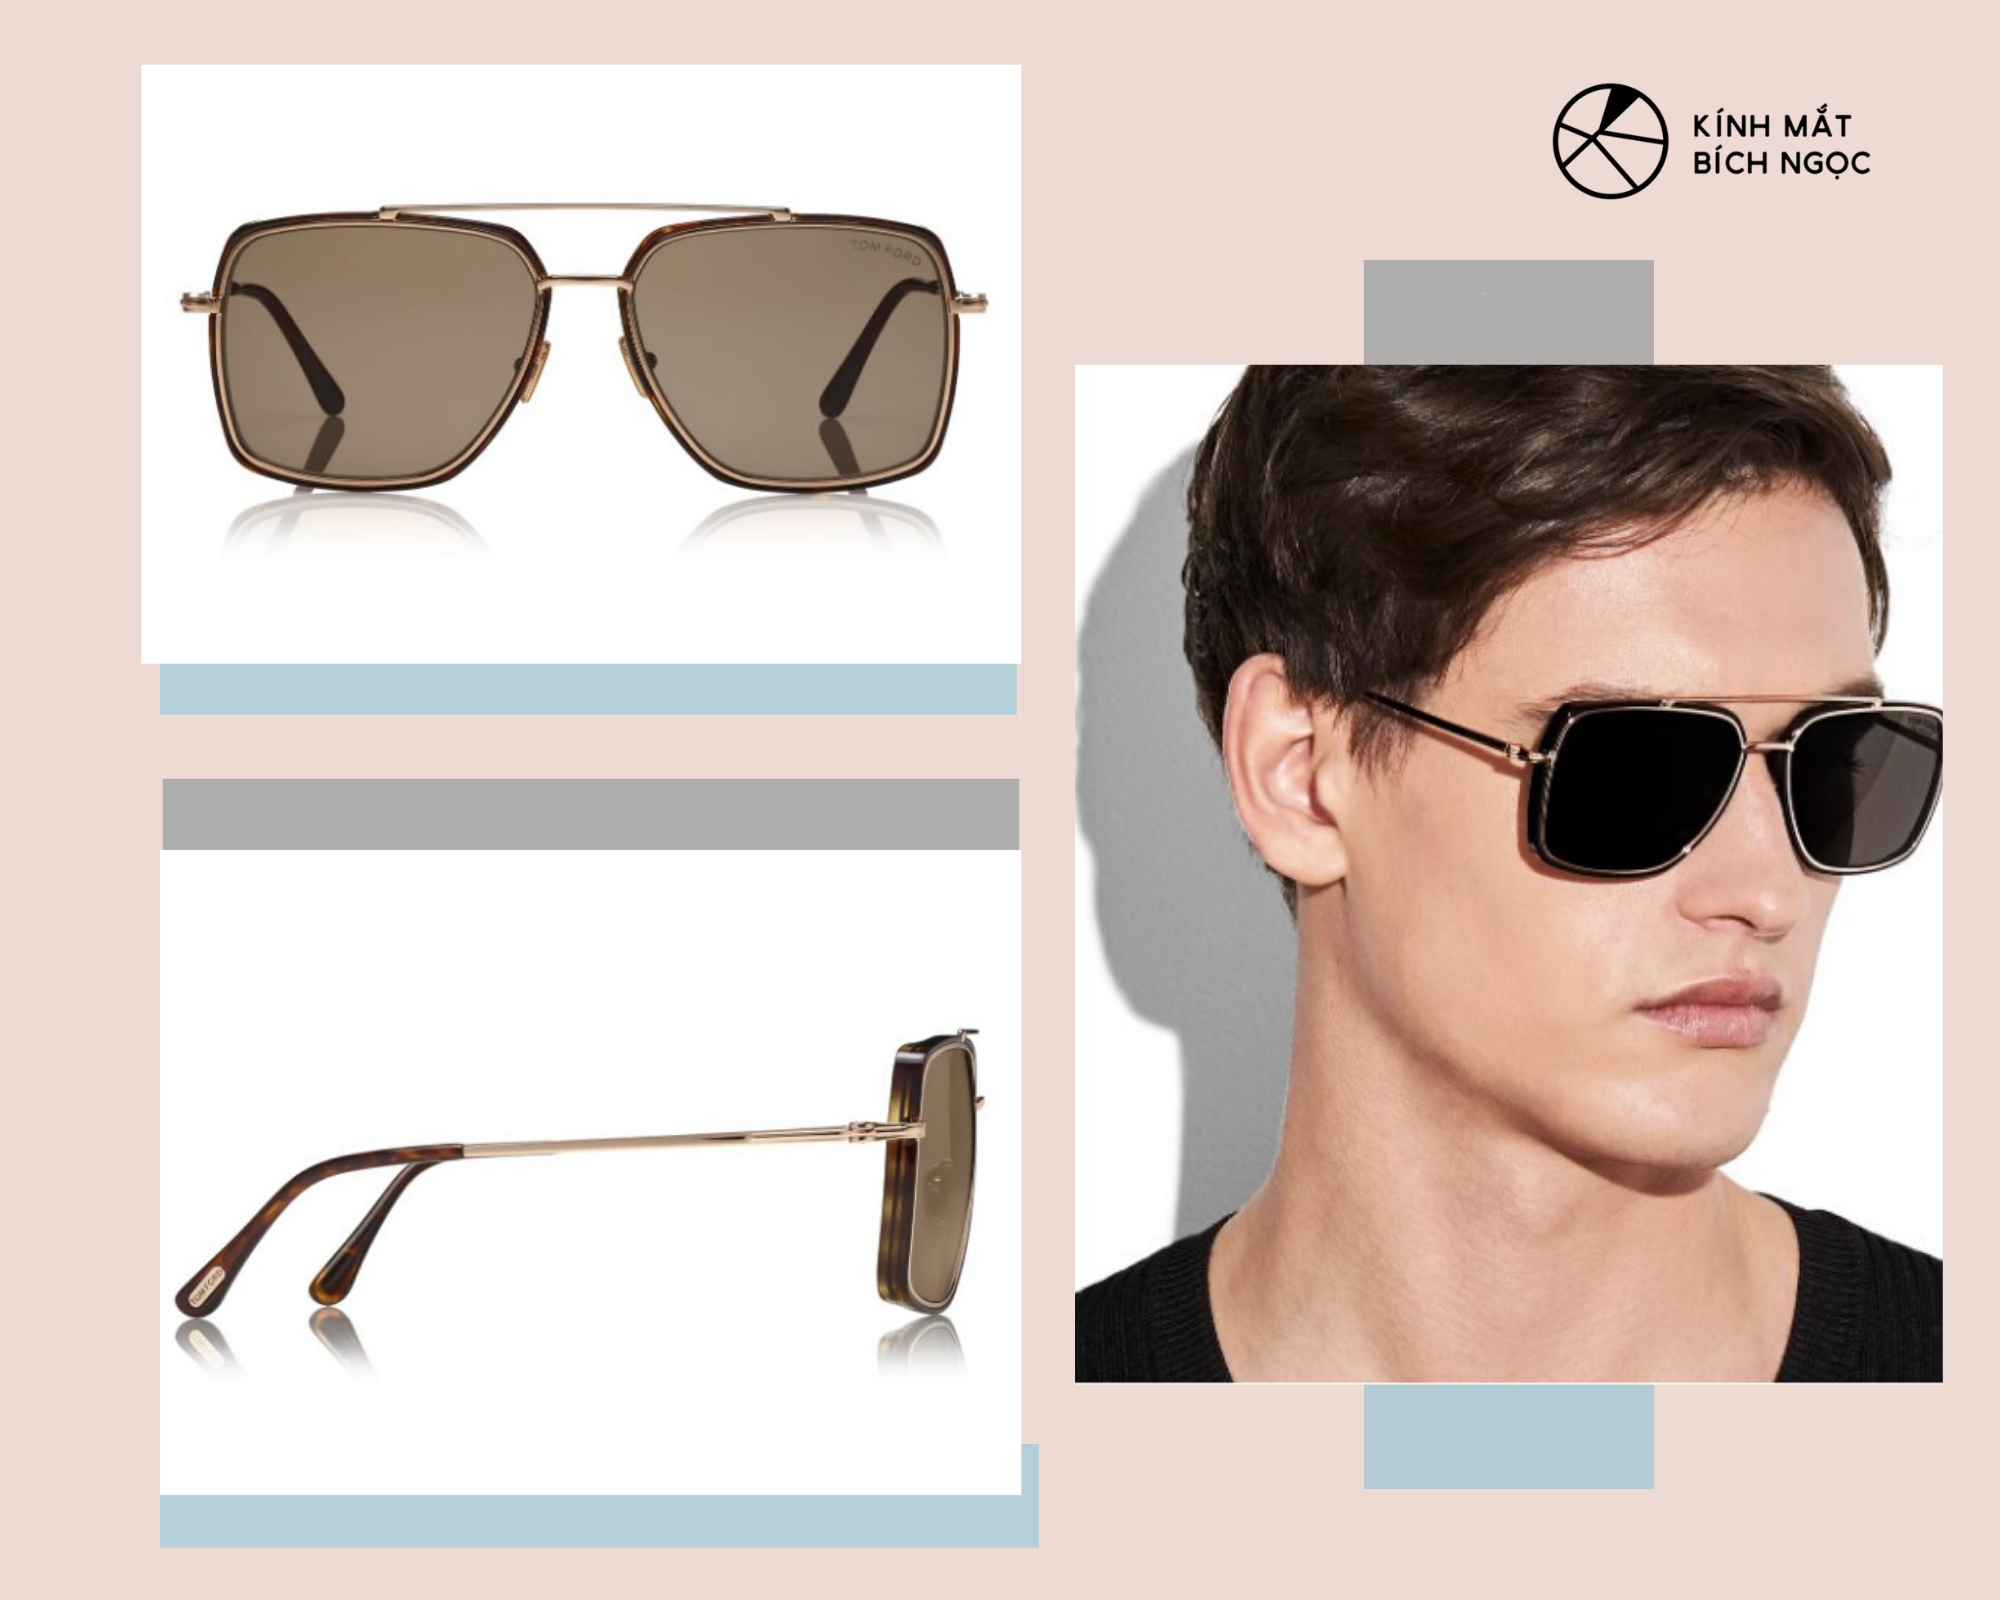 Thiết kế mắt kính Lionel Sunglasses có giá 475$